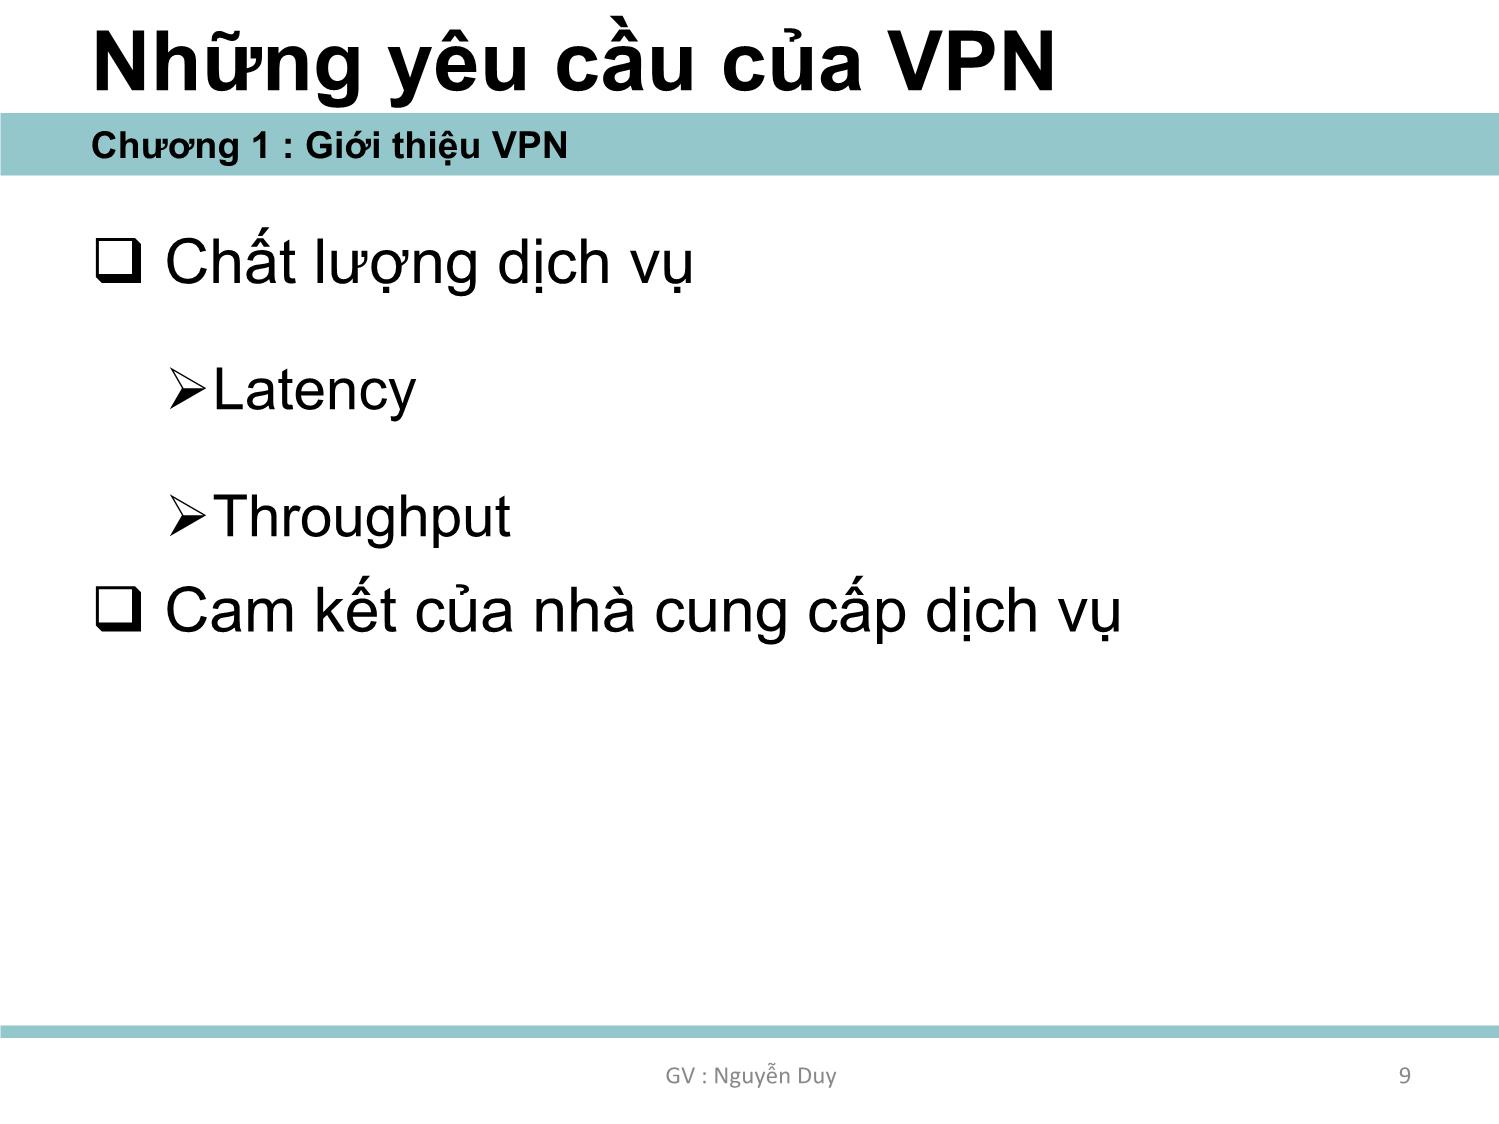 Bài giảng An ninh mạng - Chương 1: Thiết kế và triển khai VPN - Nguyễn Duy trang 9